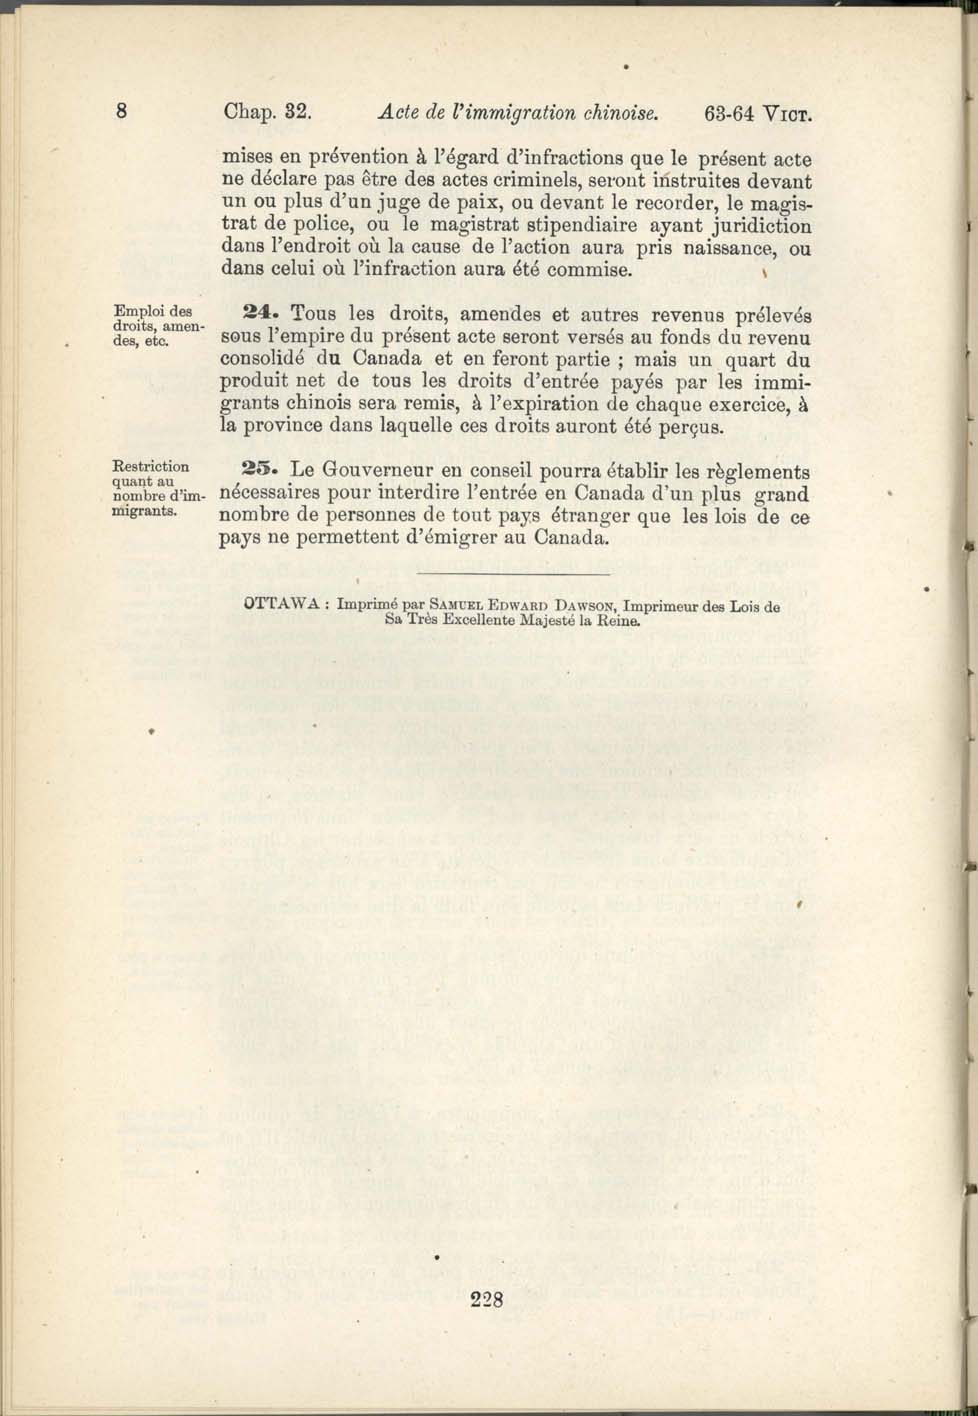 Chap. 35 Page 228 Acte de l’immigration chinoise, 1885 Amendement 1900